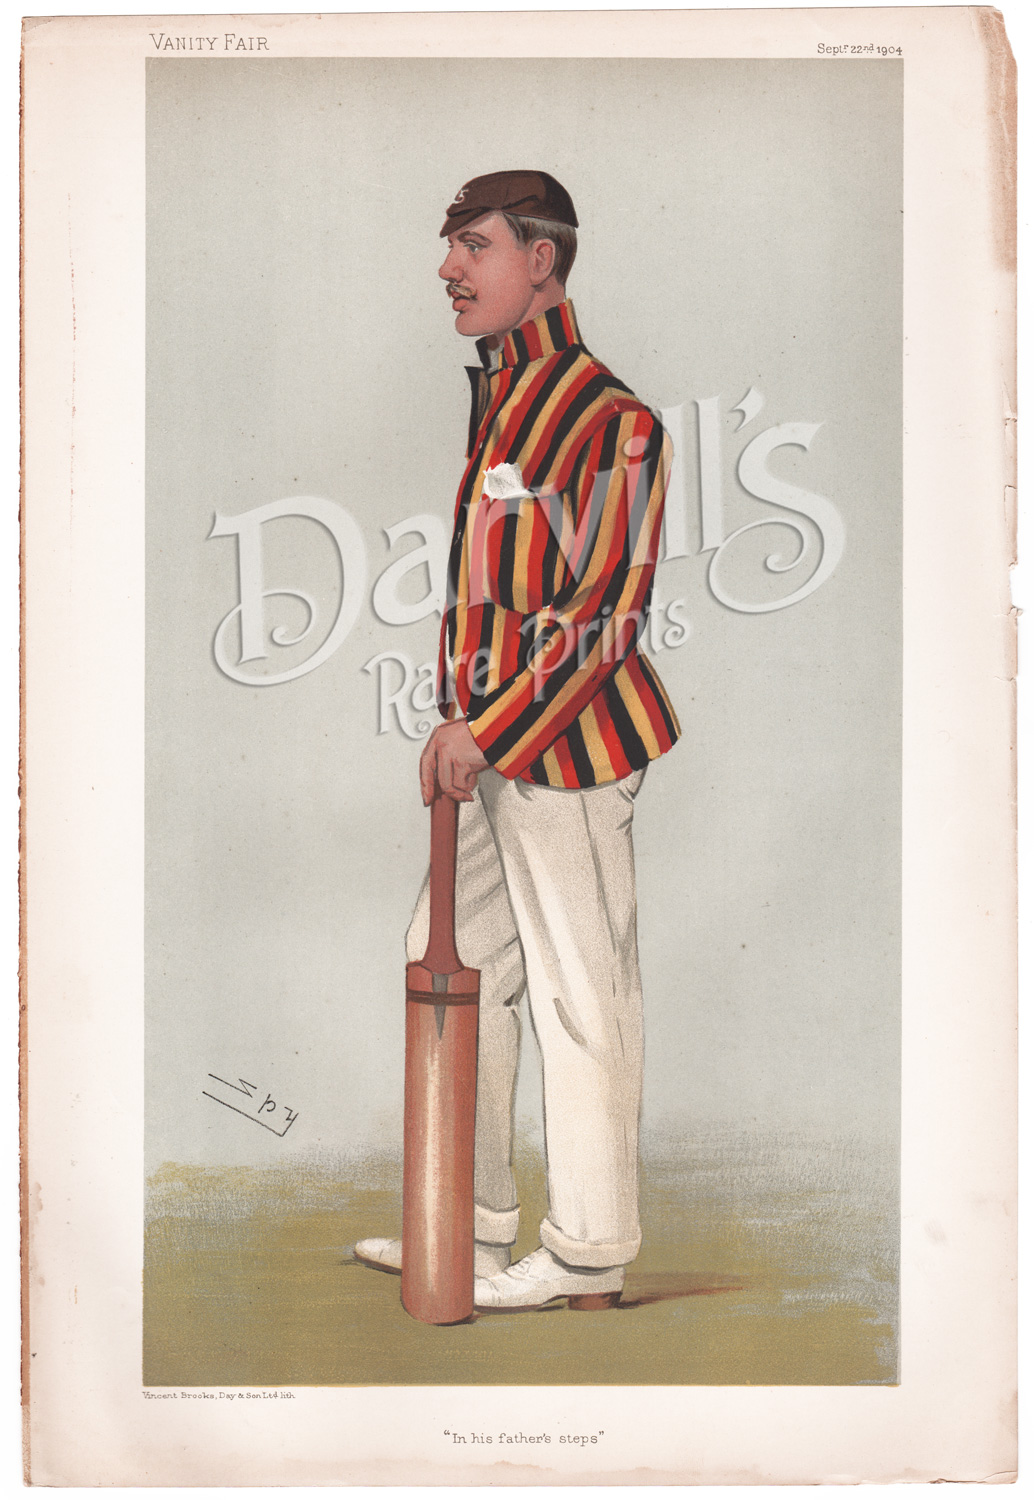 Lord Dalmeny Sept 22 1904 Cricket